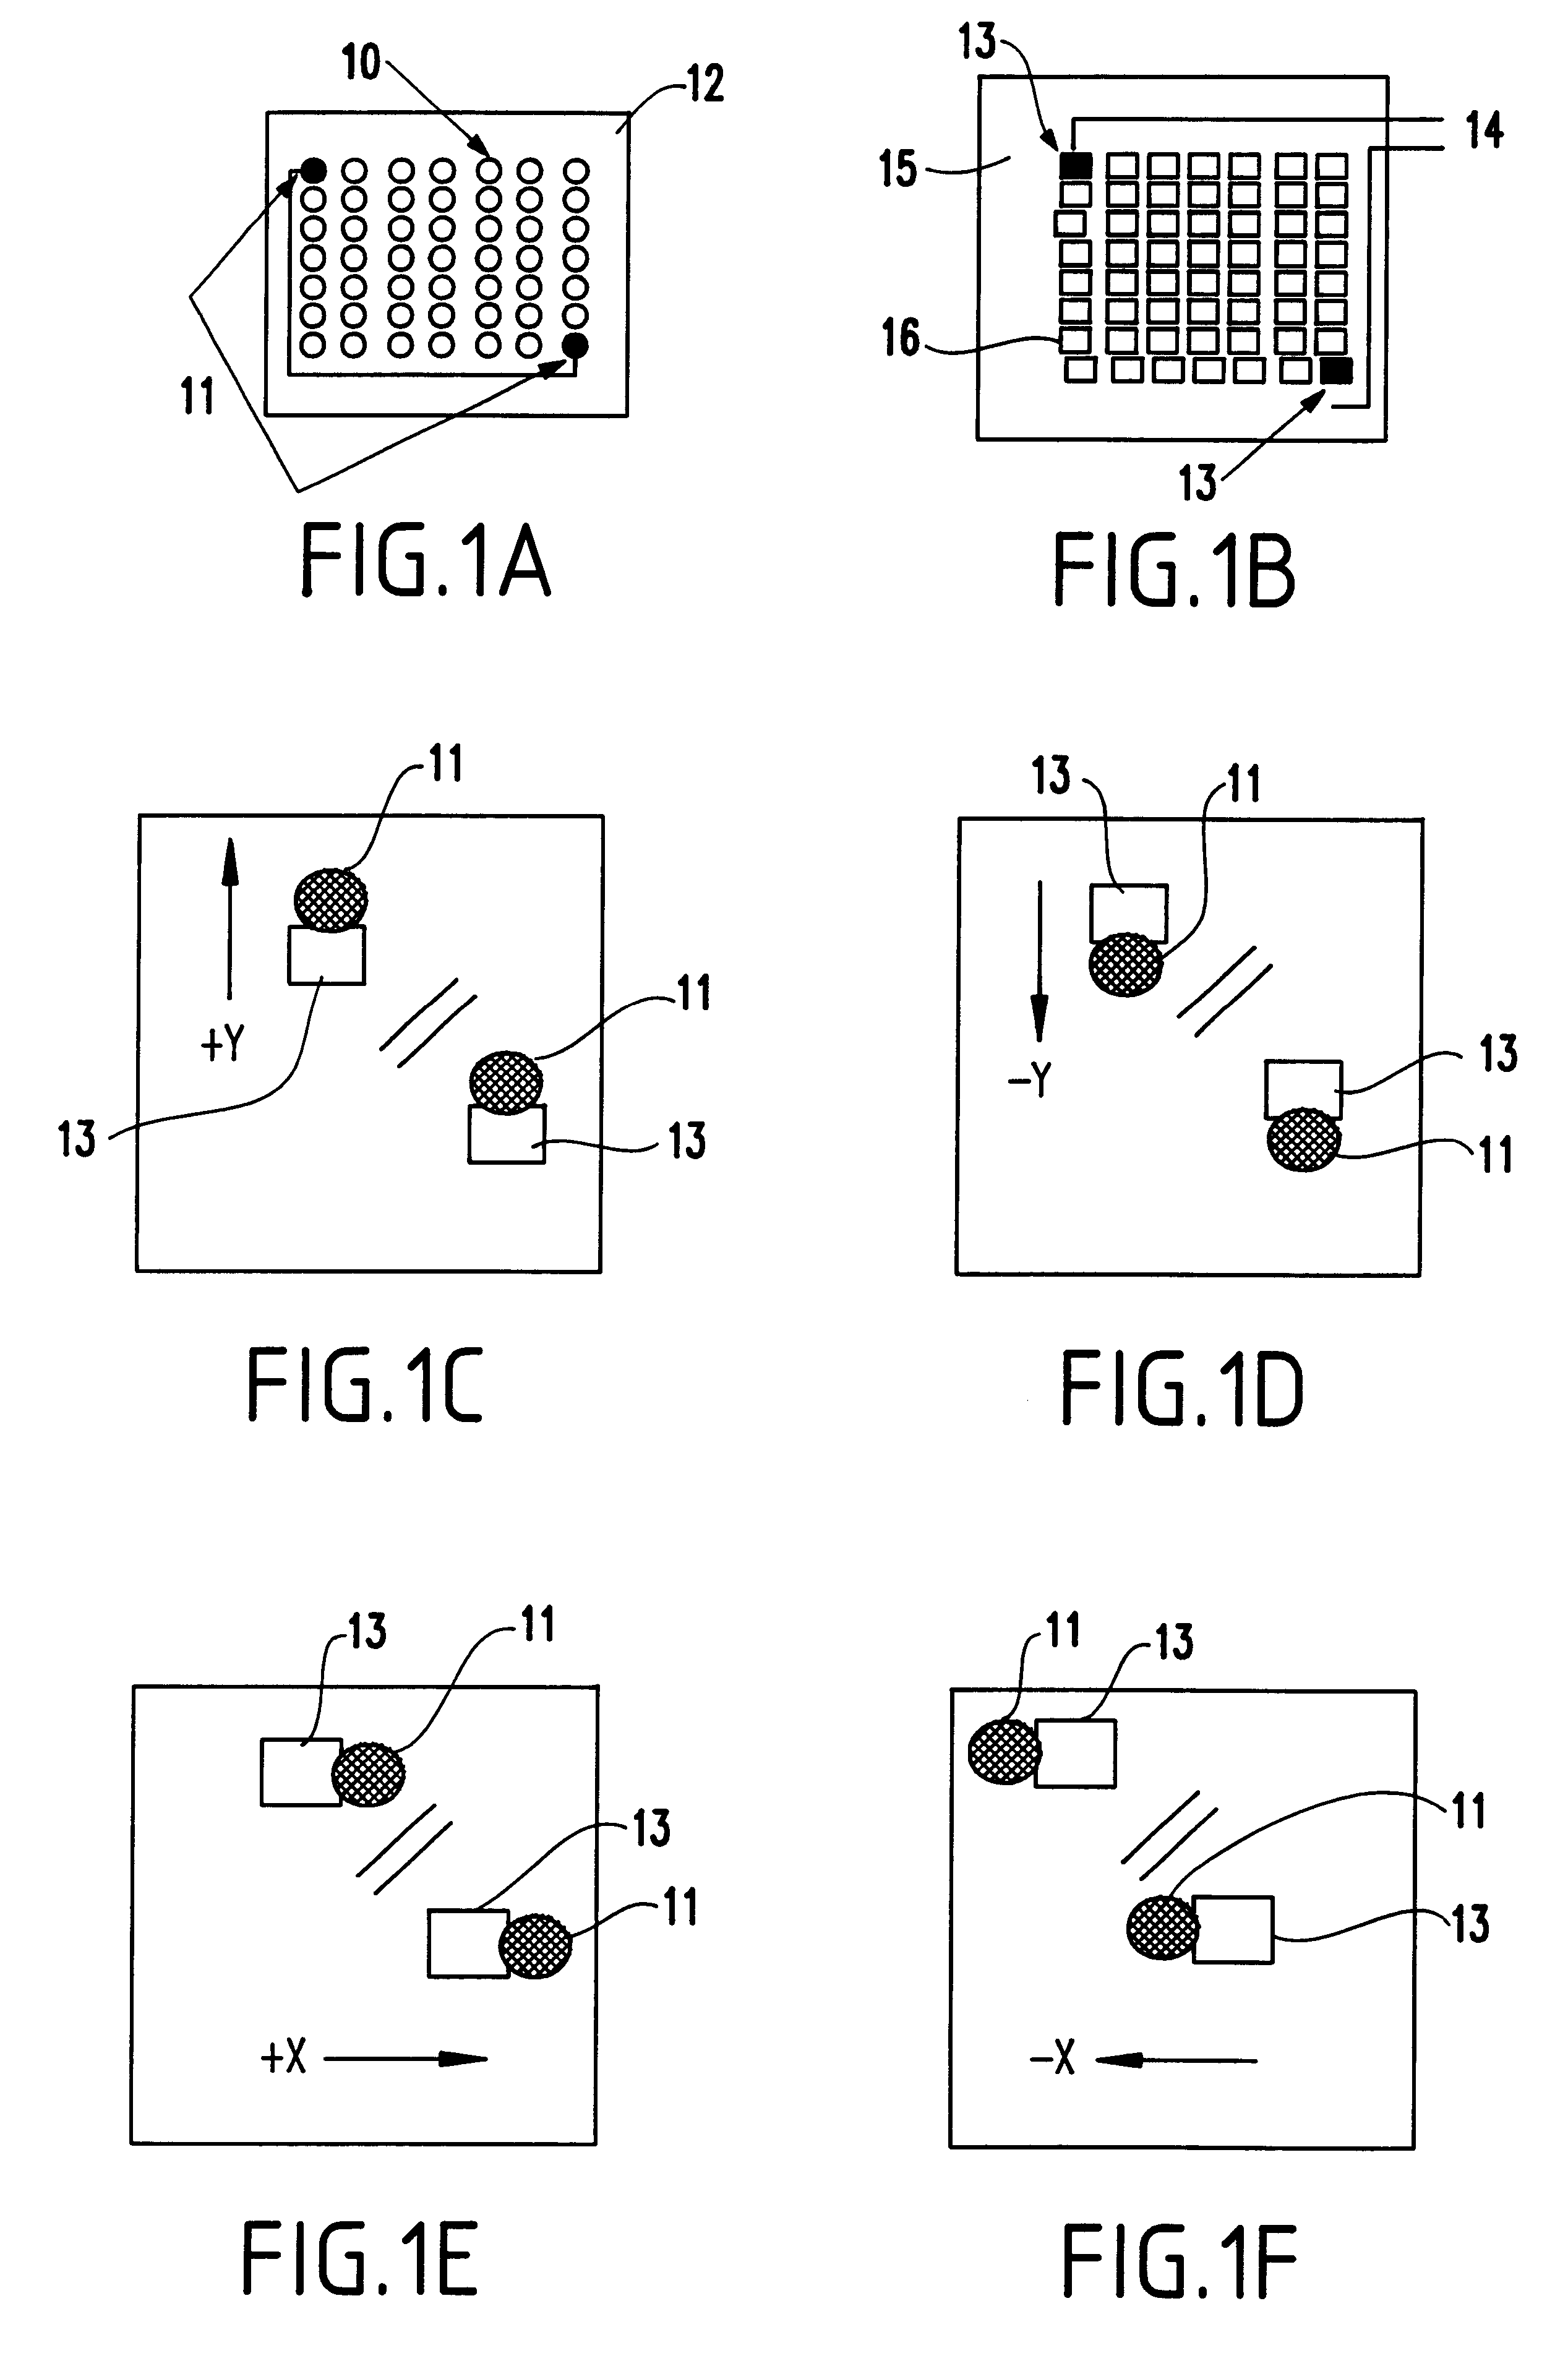 Optical sensing method to place flip chips